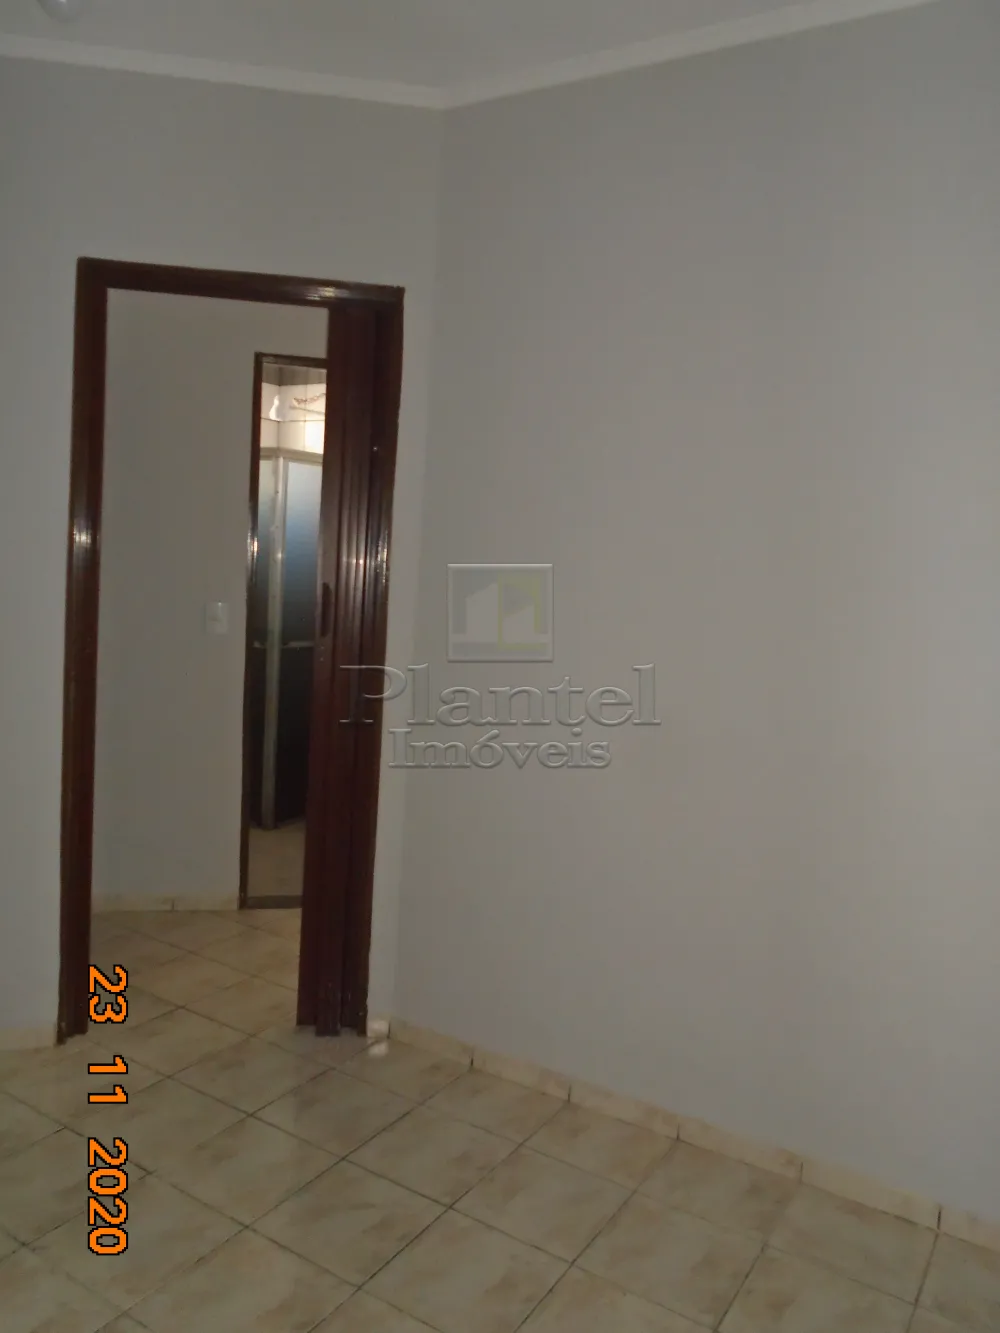 Imobiliária Ribeirão Preto - Plantel Imóveis - Apartamento - Vila Albertina - Ribeirão Preto